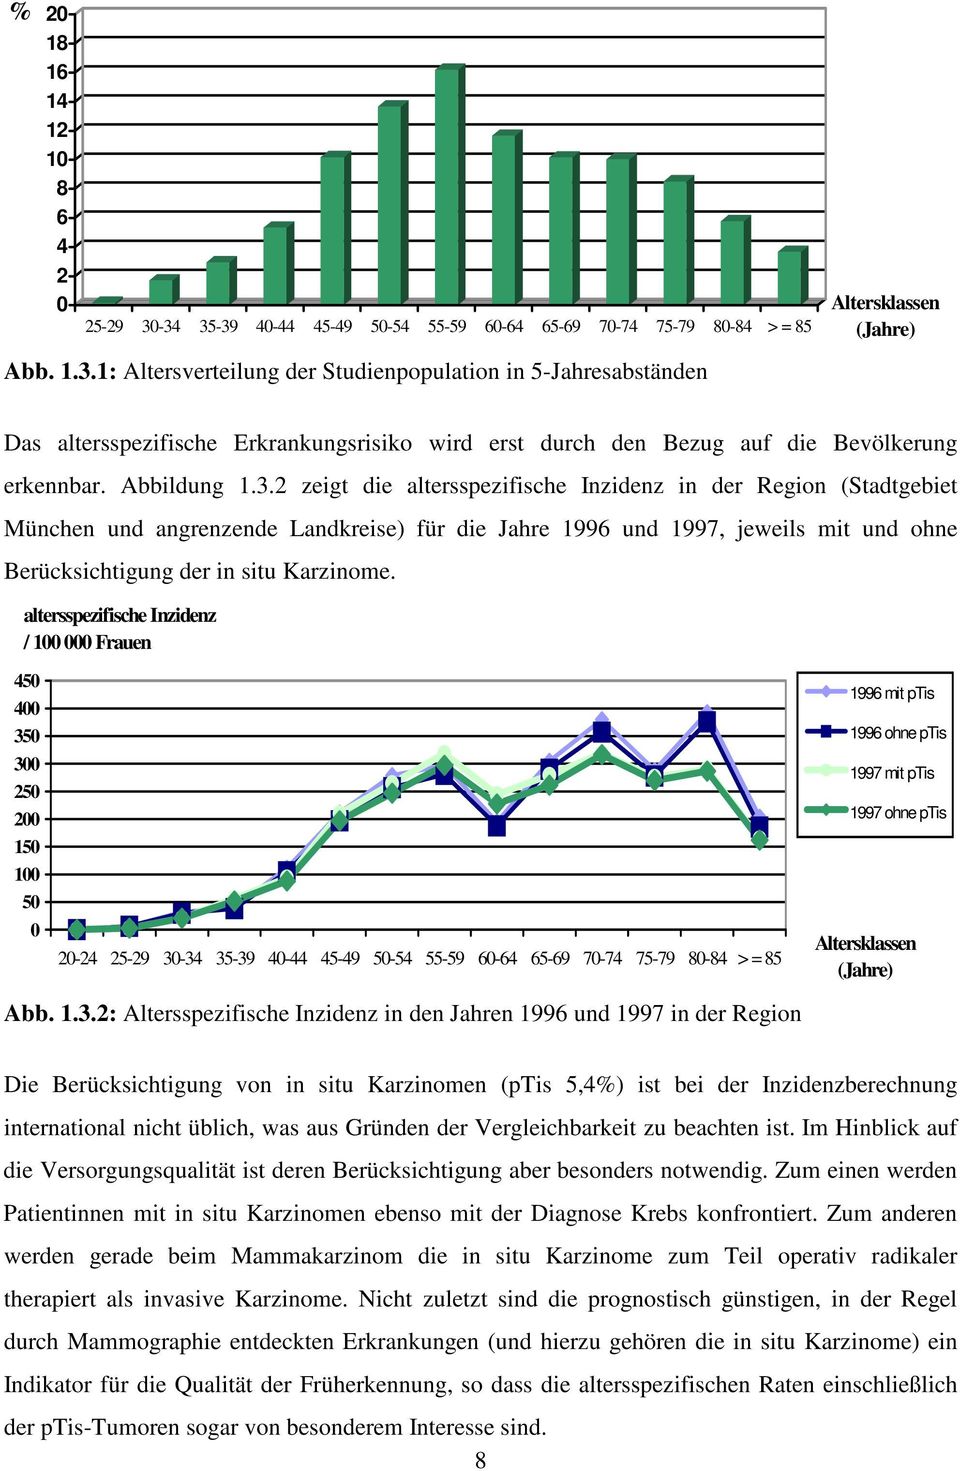 2 zeigt die altersspezifische Inzidenz in der Region (Stadtgebiet München und angrenzende Landkreise) für die Jahre 1996 und 1997, jeweils mit und ohne Berücksichtigung der in situ Karzinome.